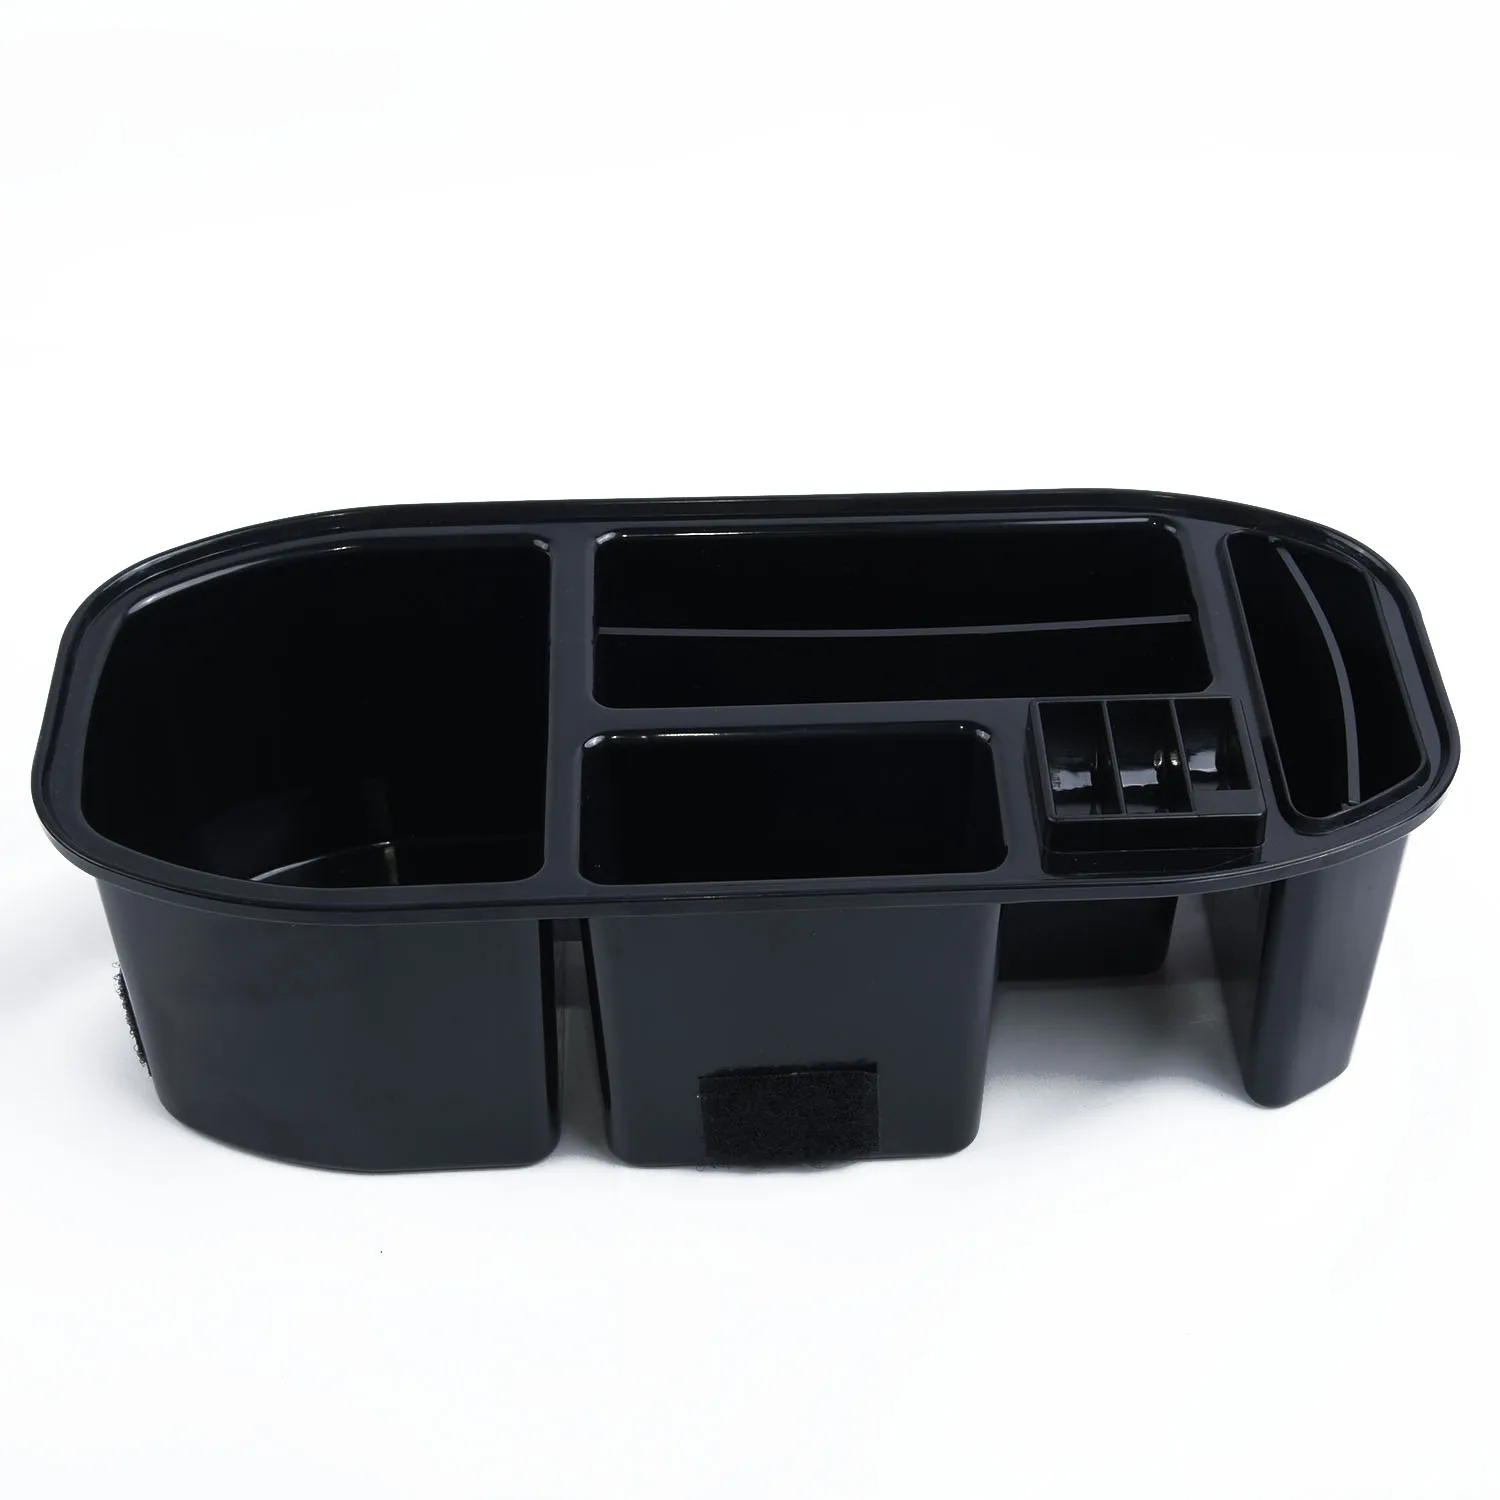 1 шт. ABS пластиковая коробка для хранения Автомобильный держатель для стакана воды коробка для хранения Контейнер лоток многосекционный дизайн для Honda Vezel HR-V HRV